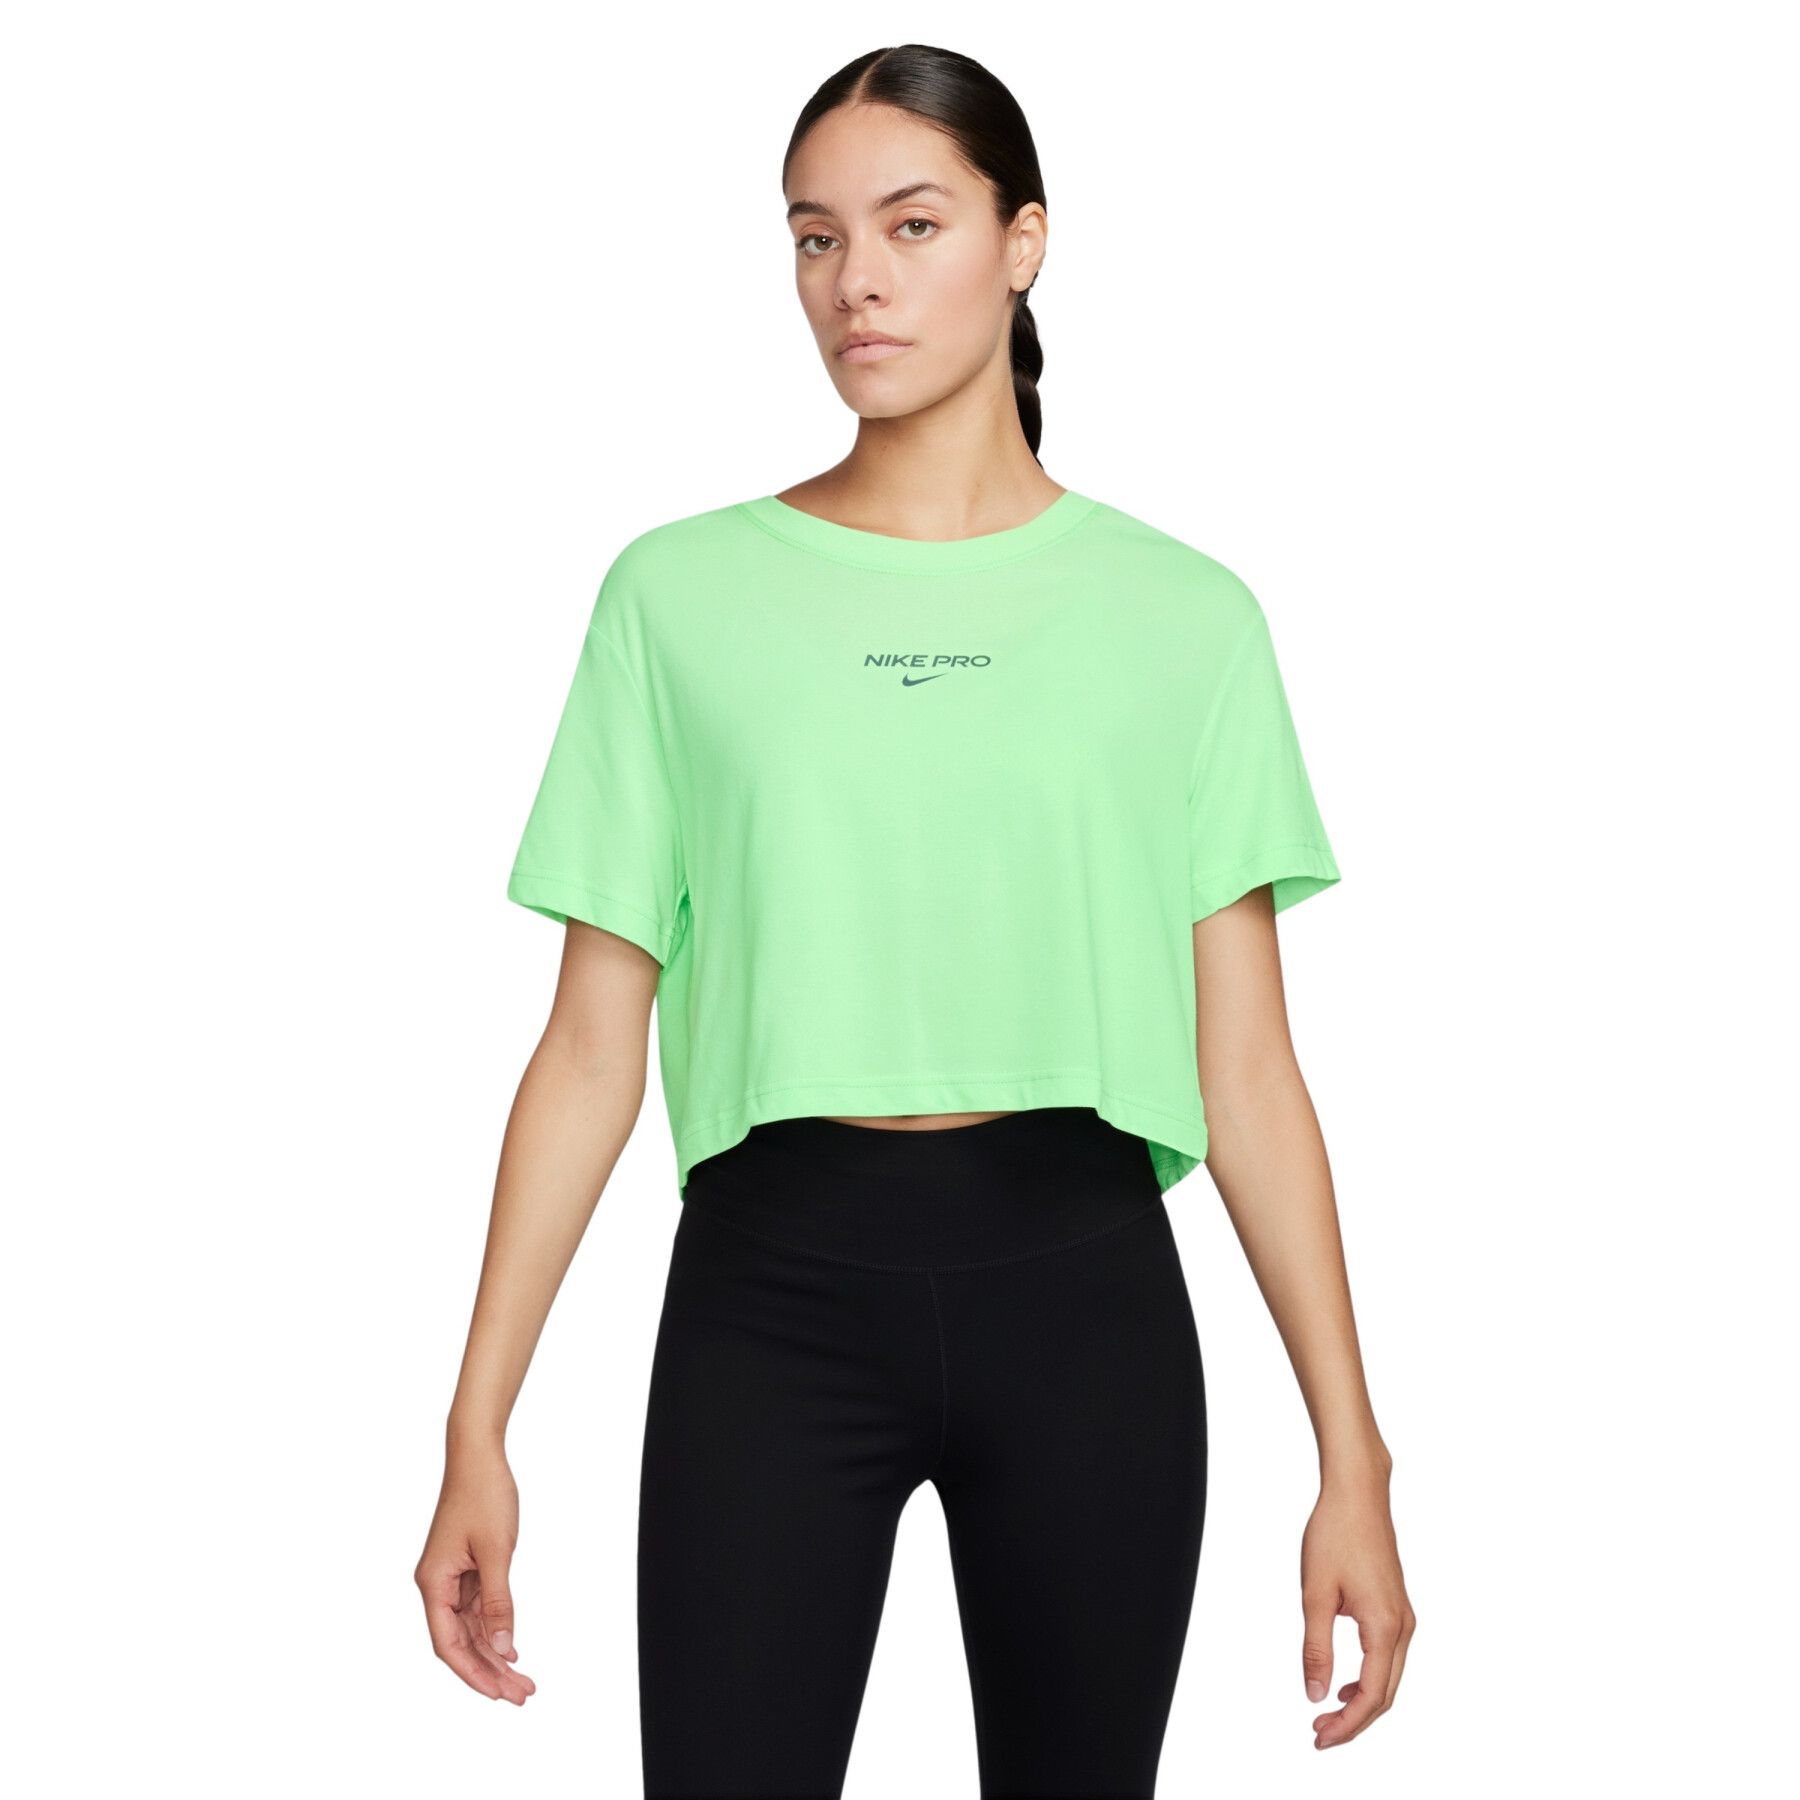 Nike Pro Women's T-Shirt